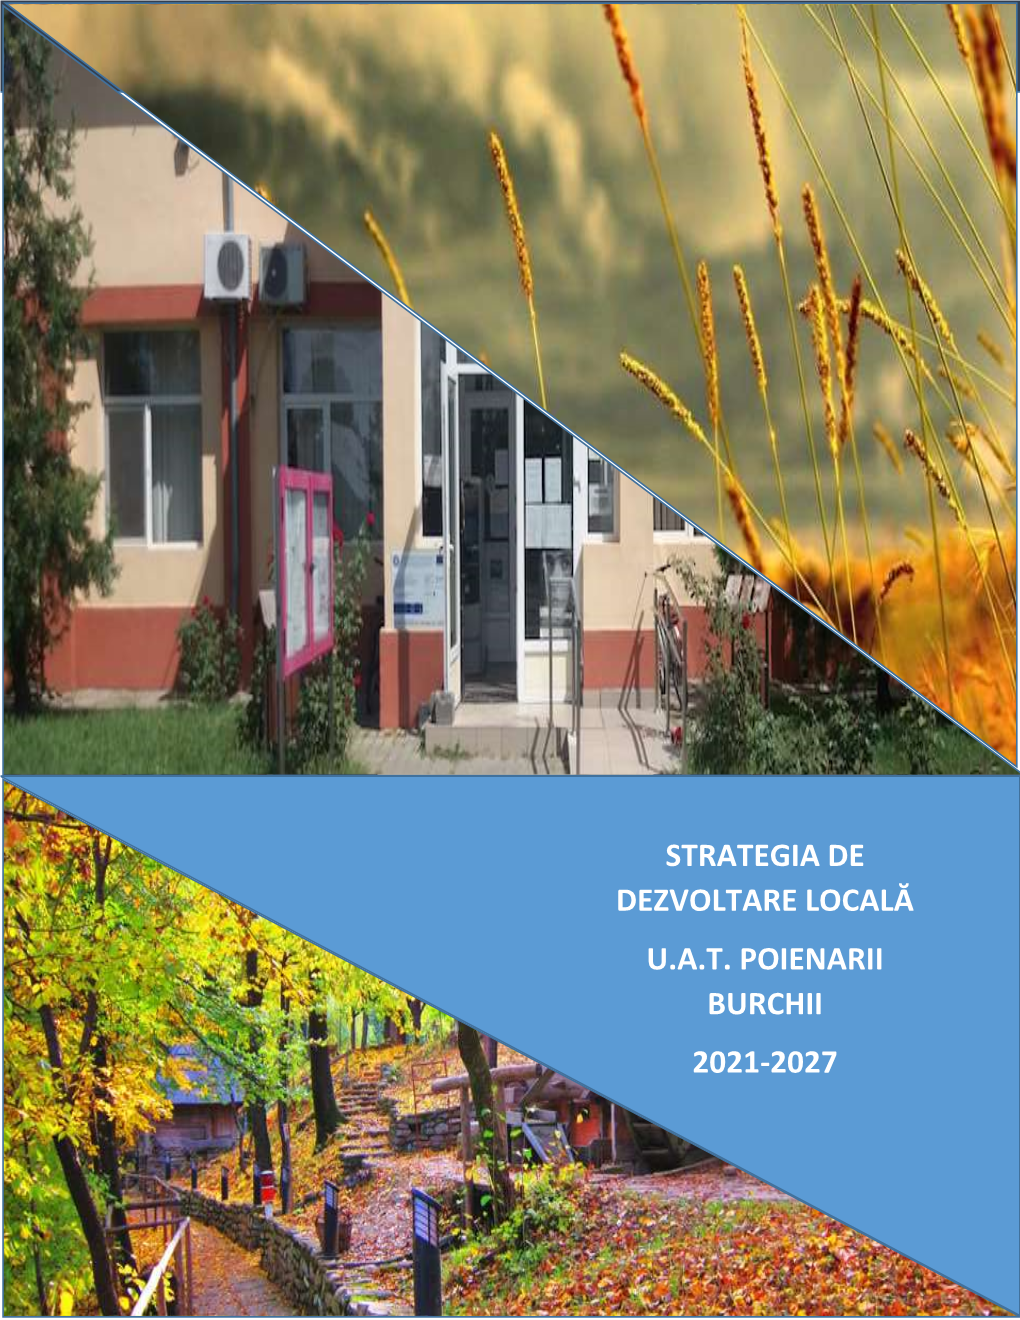 STRATEGIA DE DEZVOLTARE LOCALĂ U.A.T. POIENARII BURCHII 2021-2027 Strategia De Dezvoltare Locală a U.A.T